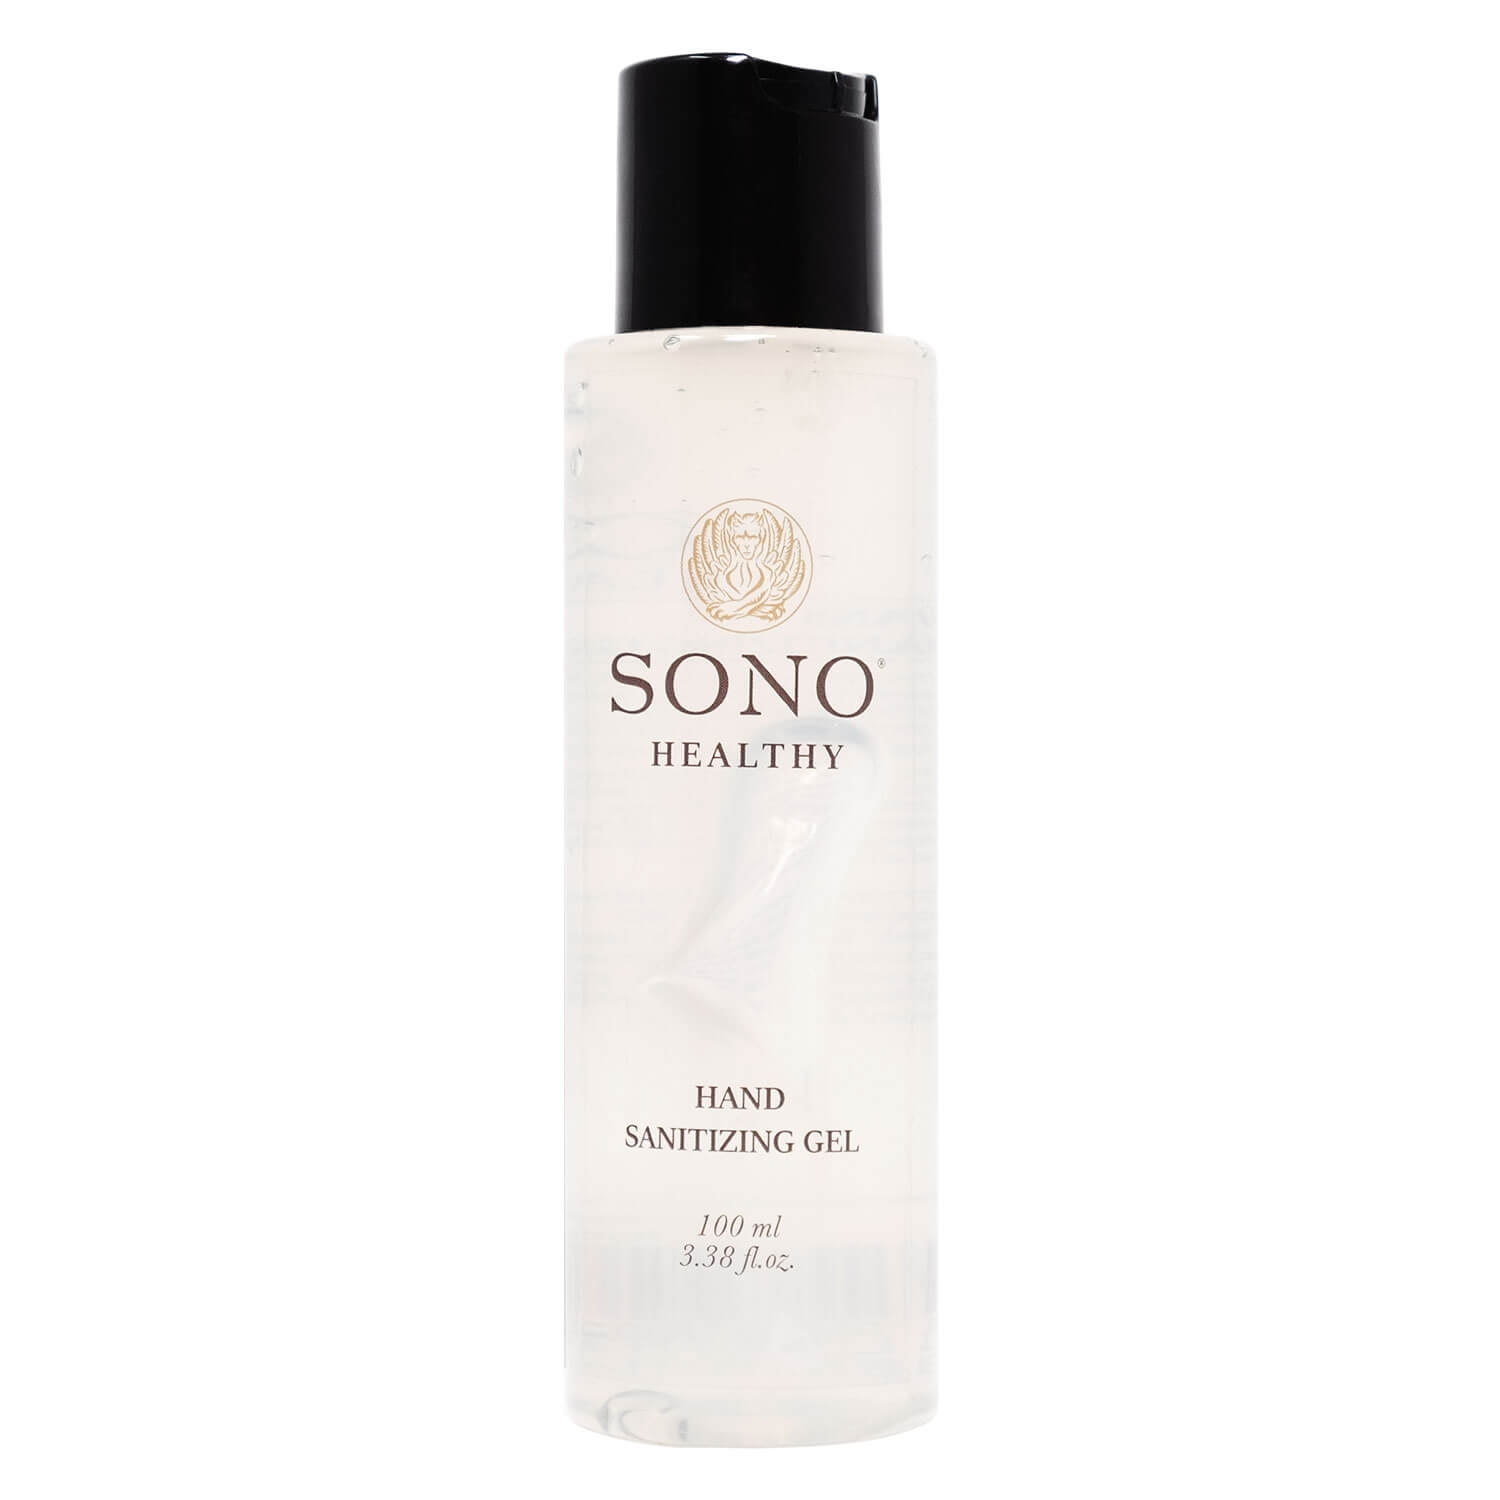 Produktbild von SONO Healthy - Hand Sanitizing Gel